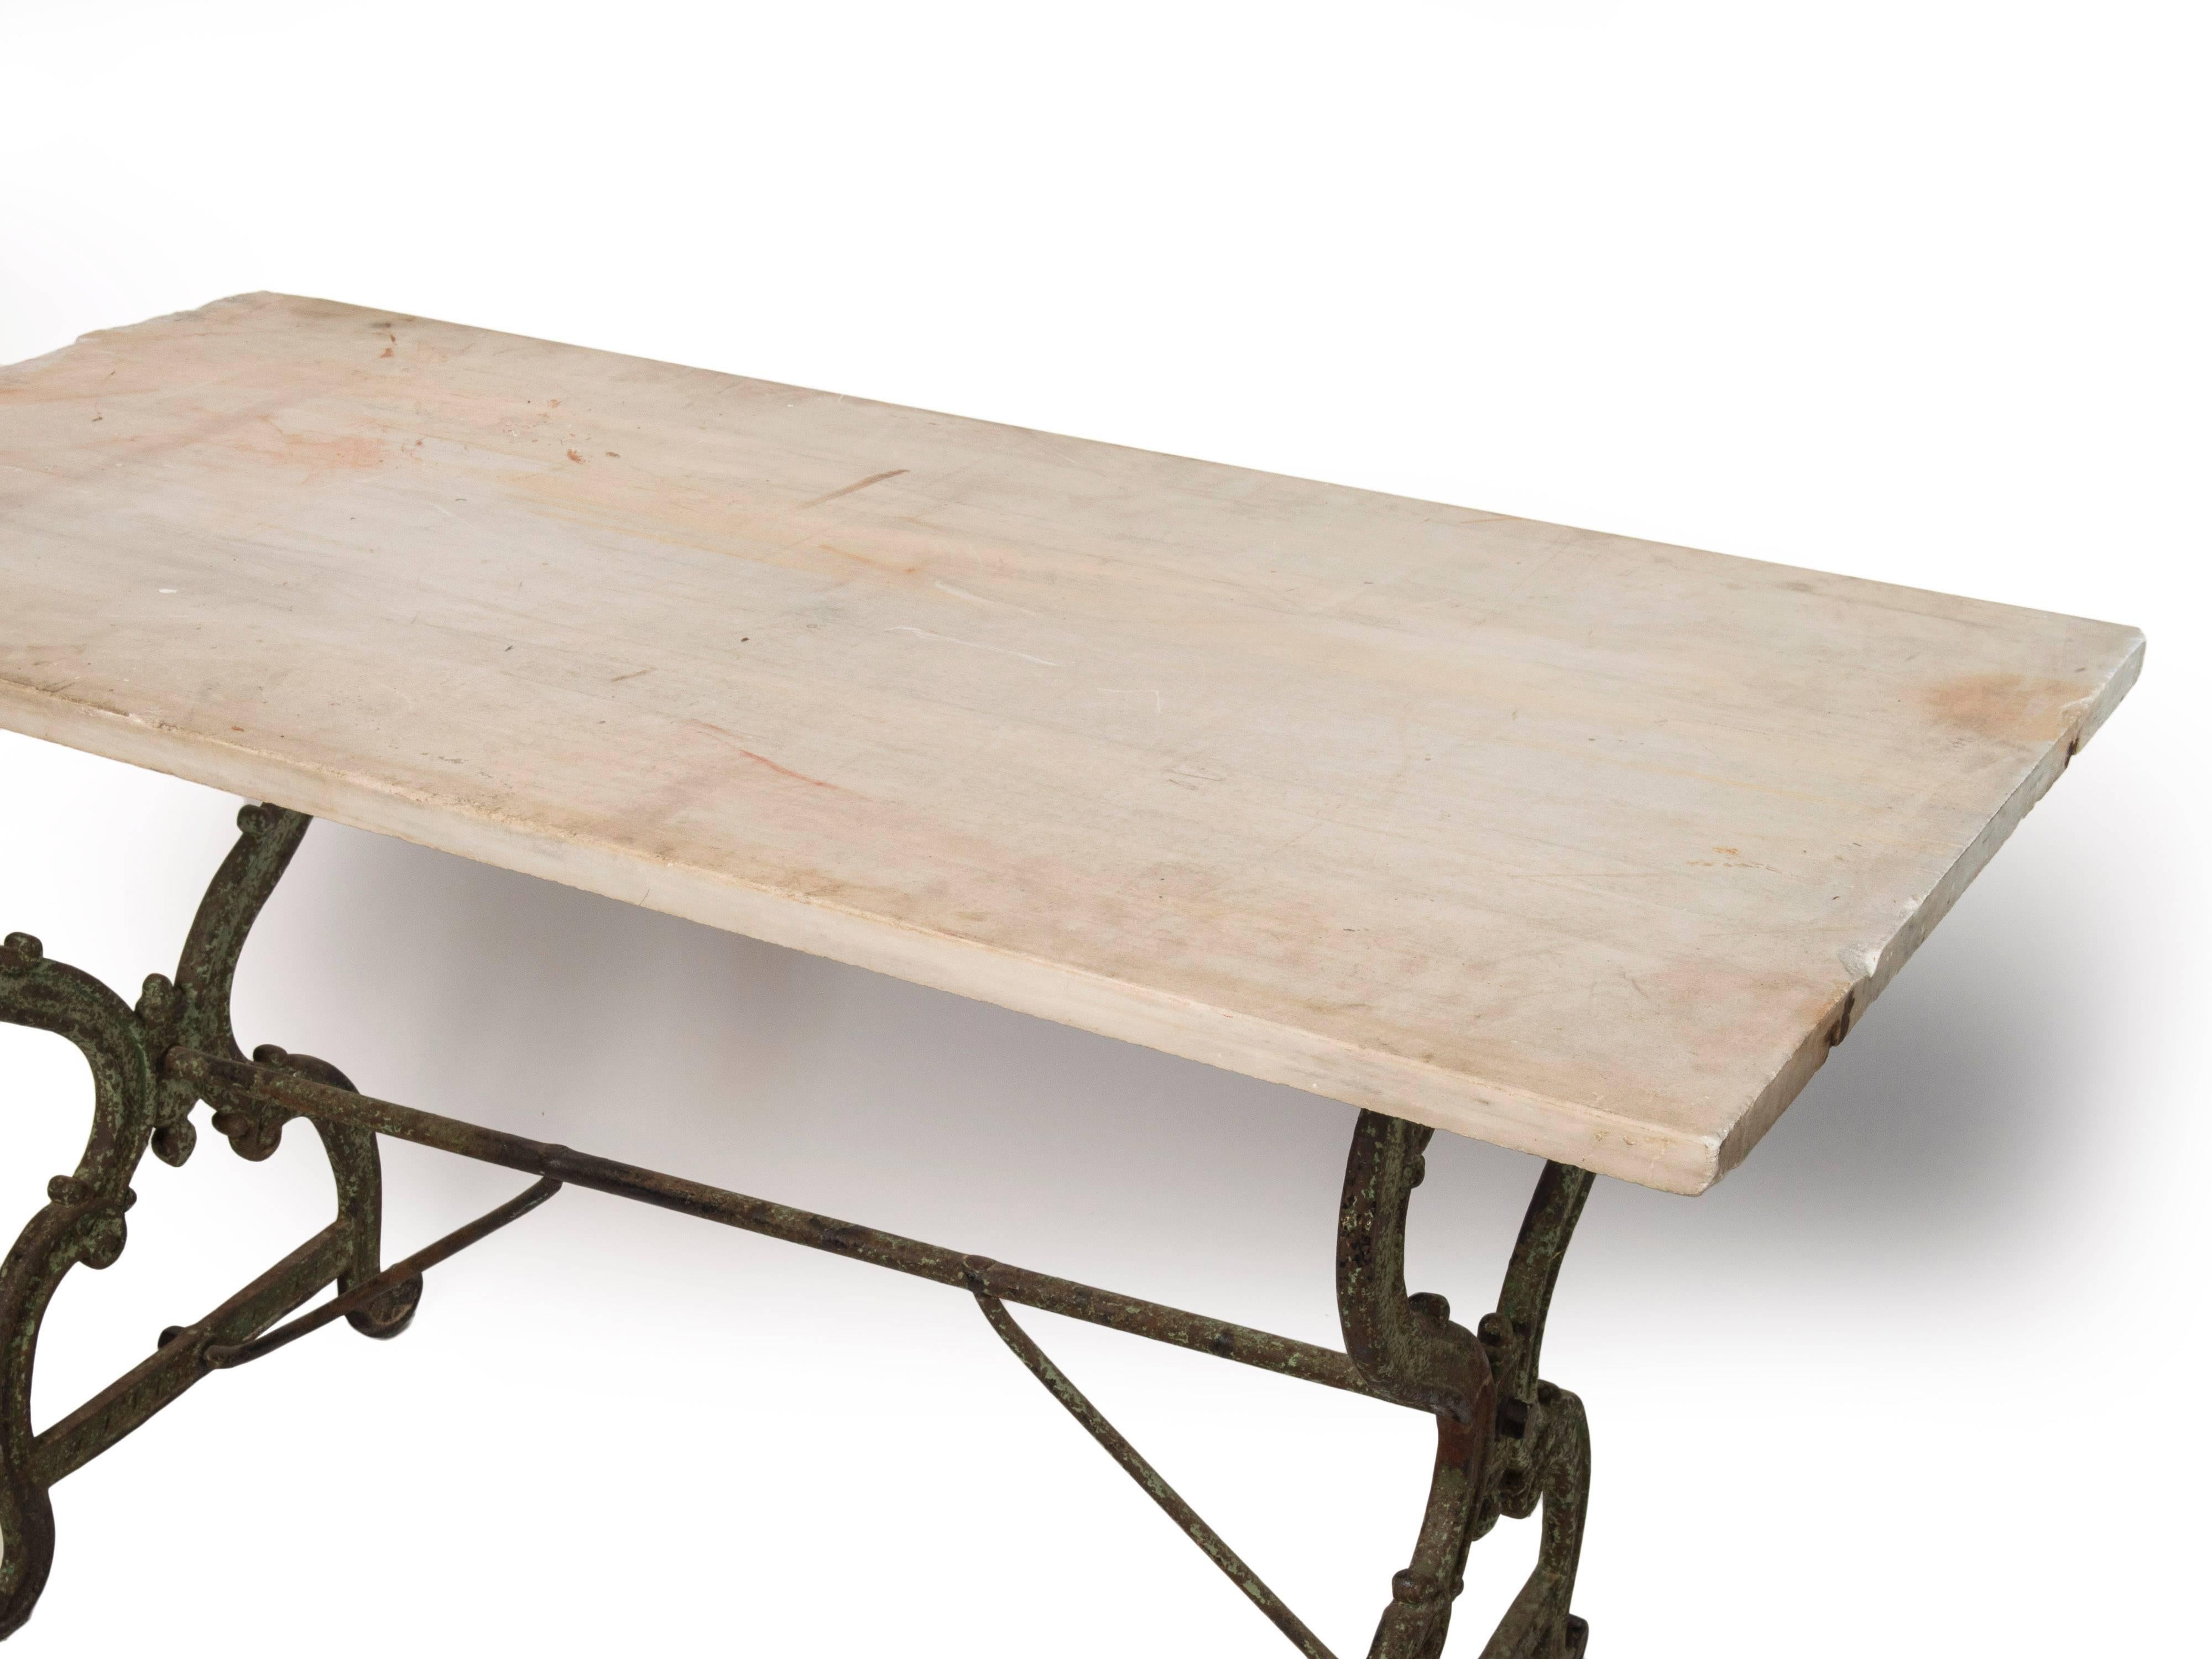 Une table console avec une base en fonte et un dessus en marbre original.